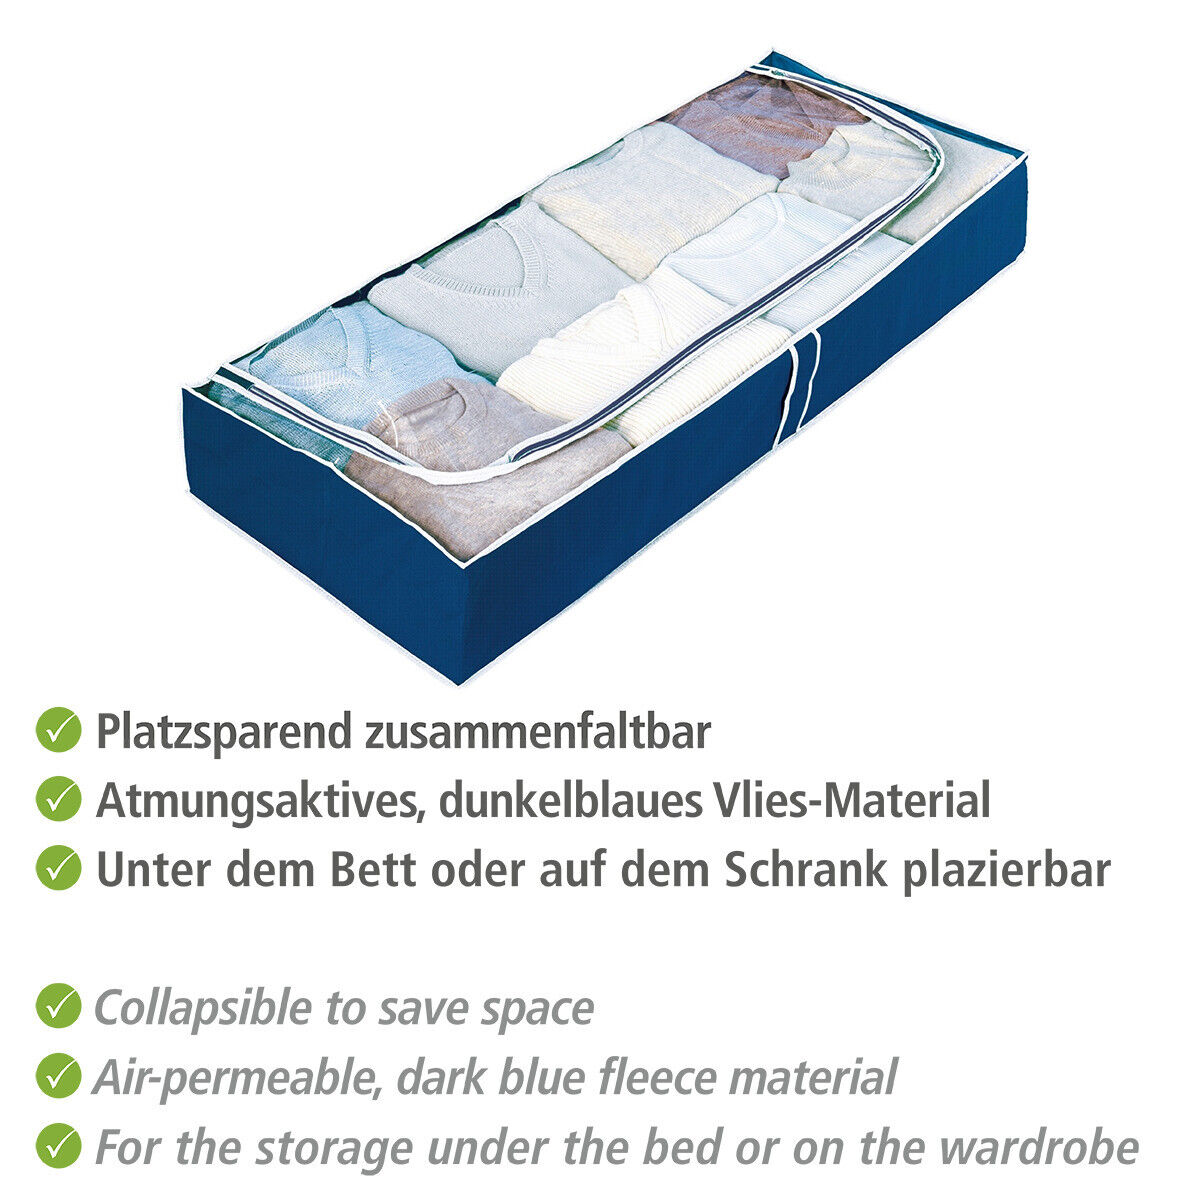 WENKO 4er Set Unterbett Kommode Box Kleider Sack Aufbewahrung Air